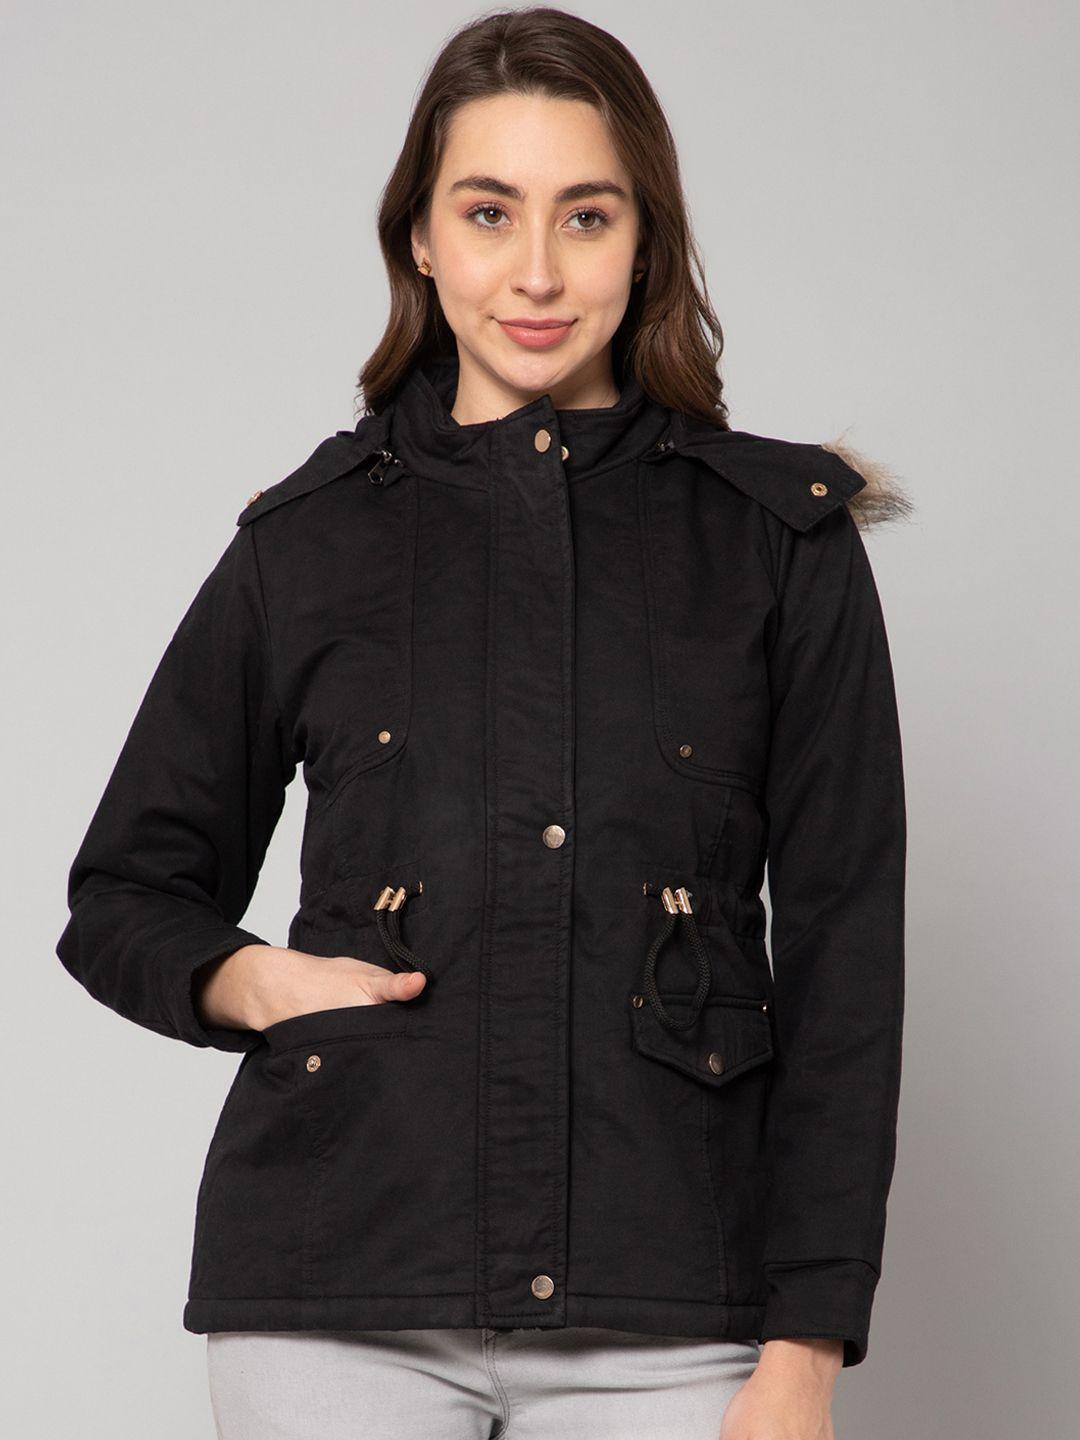 cantabil women lightweight cotton parka jacket